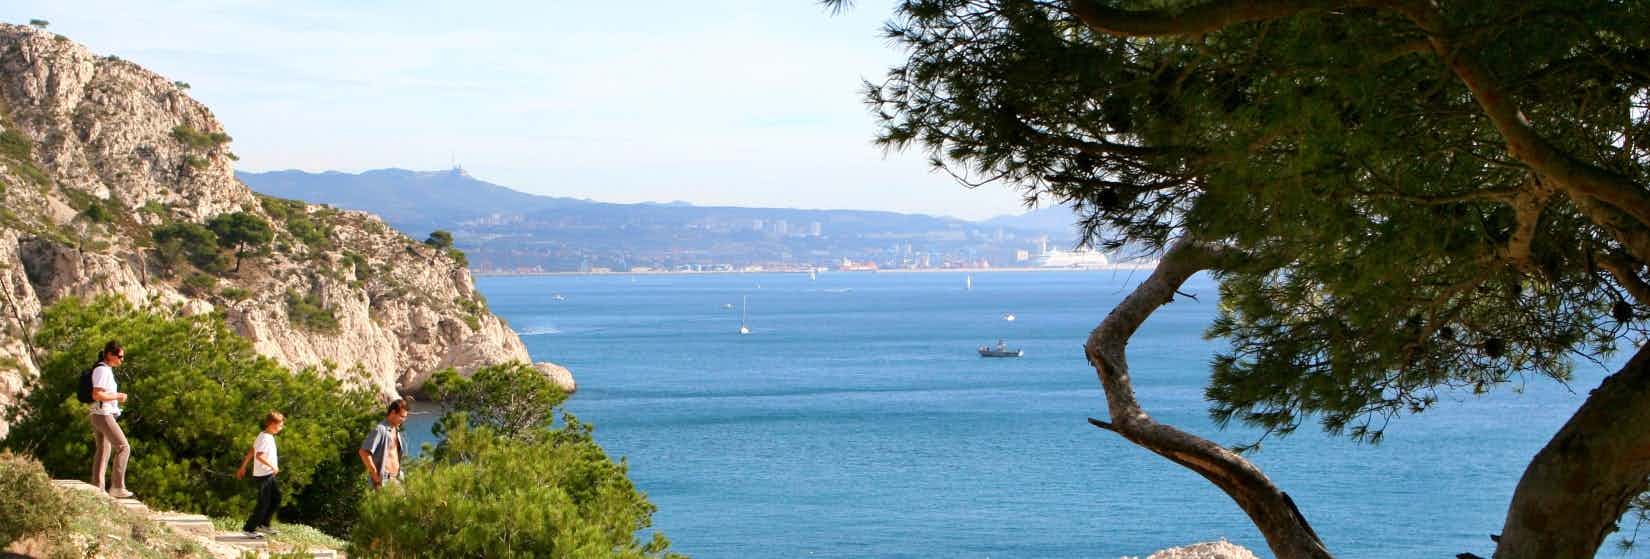 Côte d'Azur aan zee